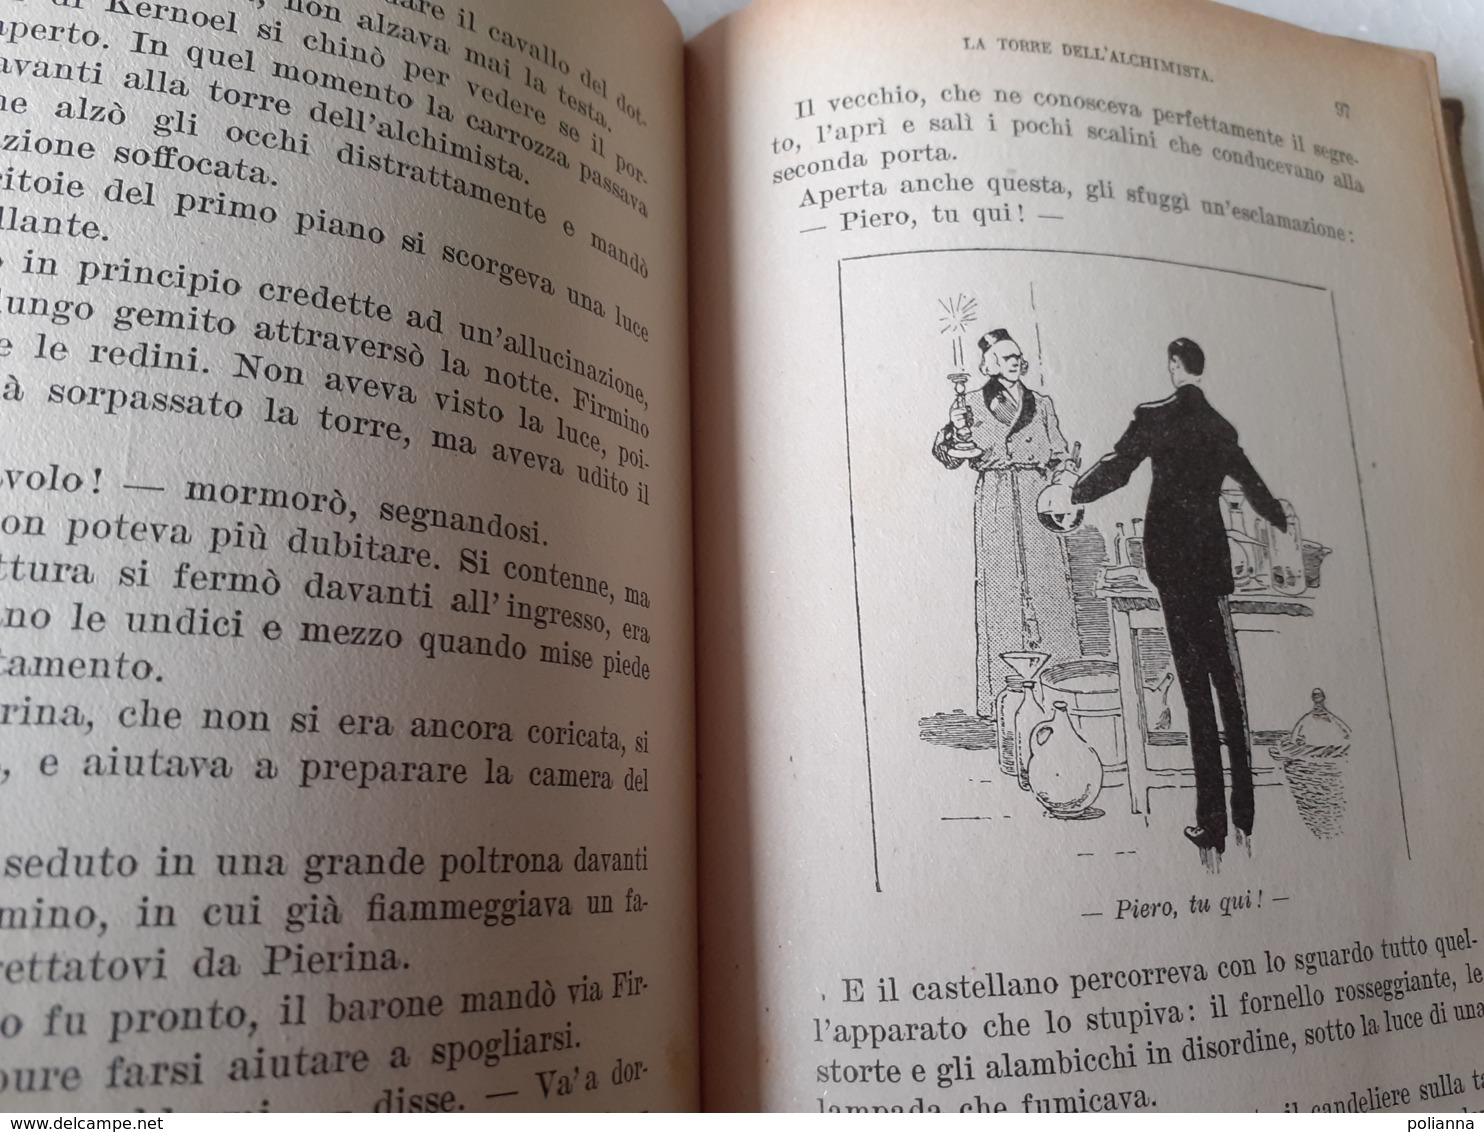 M#0W61 "Biblioteca Dei Miei Ragazzi" : A. De Maillane LA TORRE DELL'ALCHIMISTA Salani Ed.1937 - Anciens